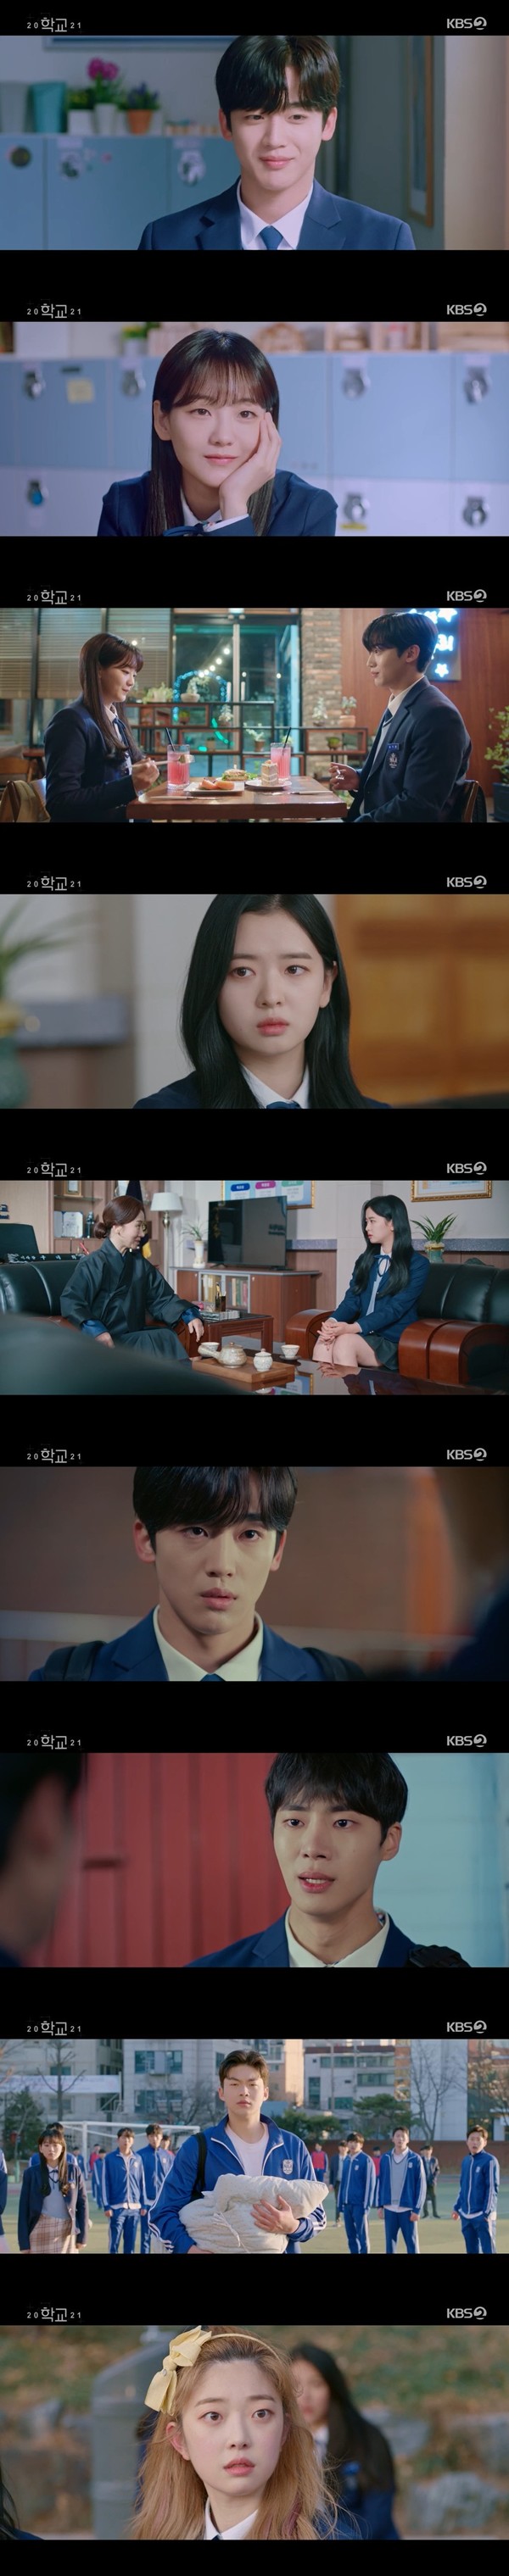 사진 제공 : KBS 2TV 수목드라마 '학교 2021' 방송 캡처